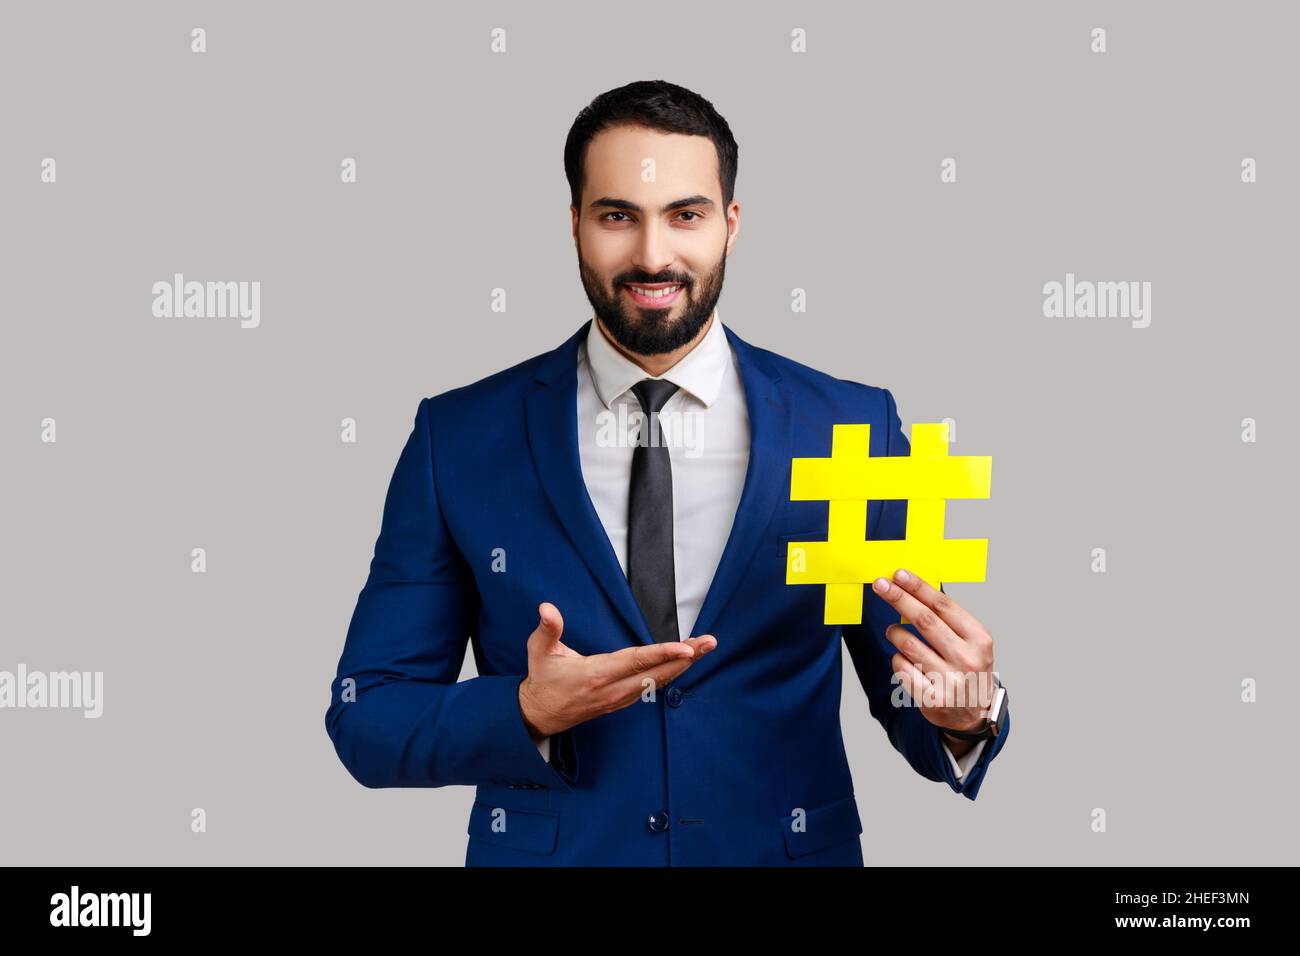 Retrato de sonriente hombre barbudo presentando amarillo hashtag, marcado de tendencias de blog, tema viral en la red social, con traje de estilo oficial. Estudio en interior grabado aislado sobre fondo gris. Foto de stock